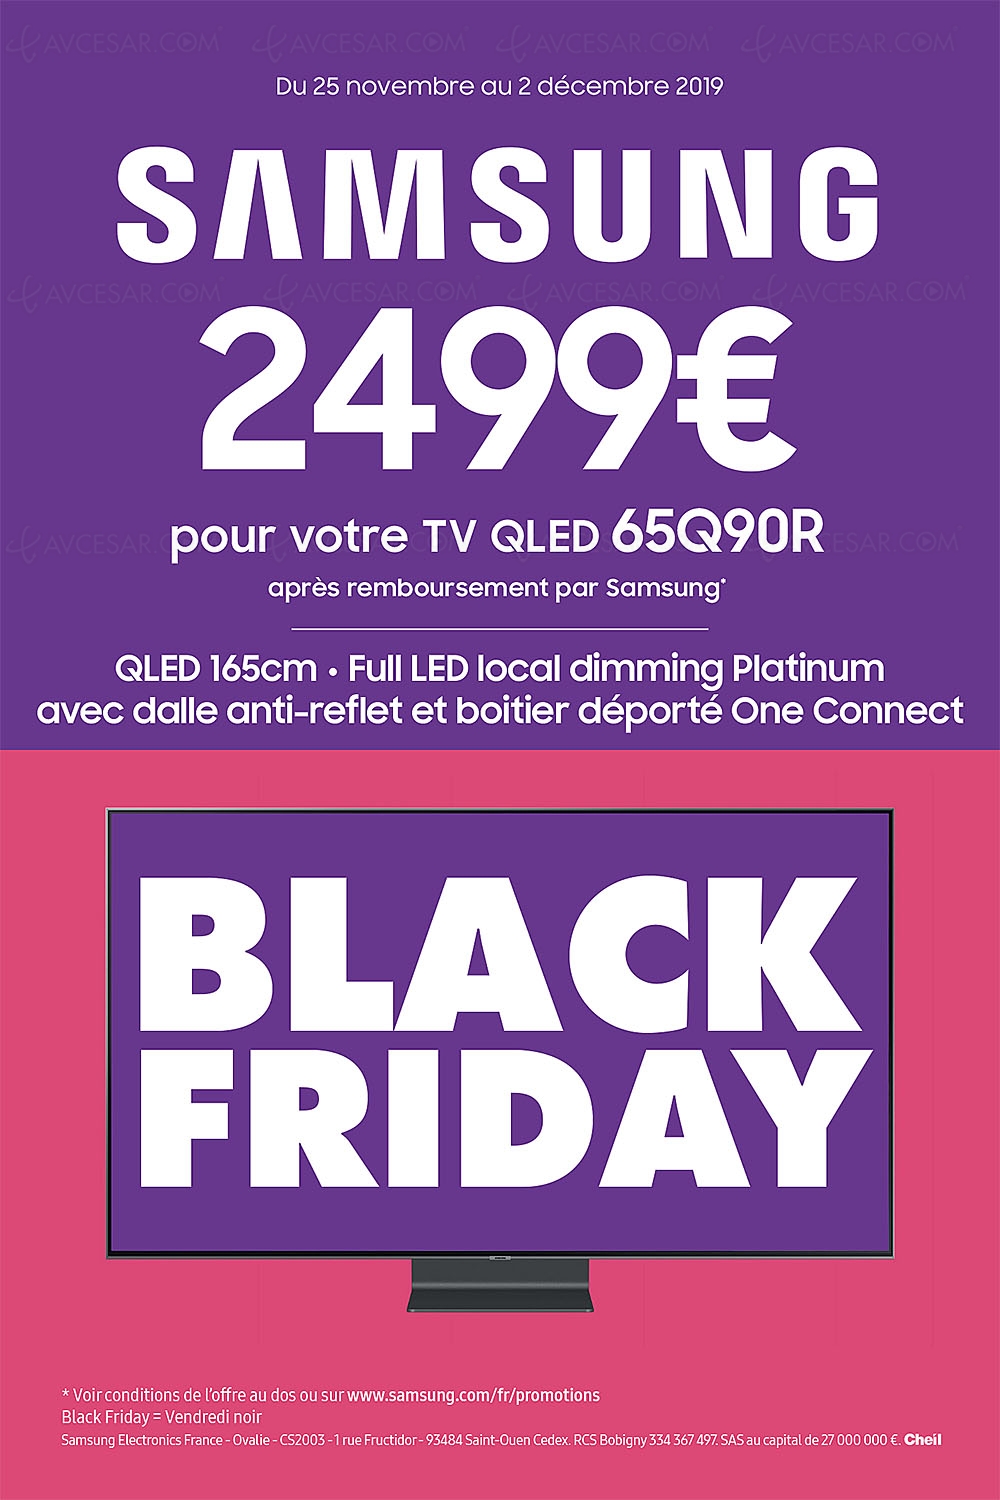 Black Friday 2019 &gt; Offre de remboursement 1 000 € TV QLED Samsung 65Q90R